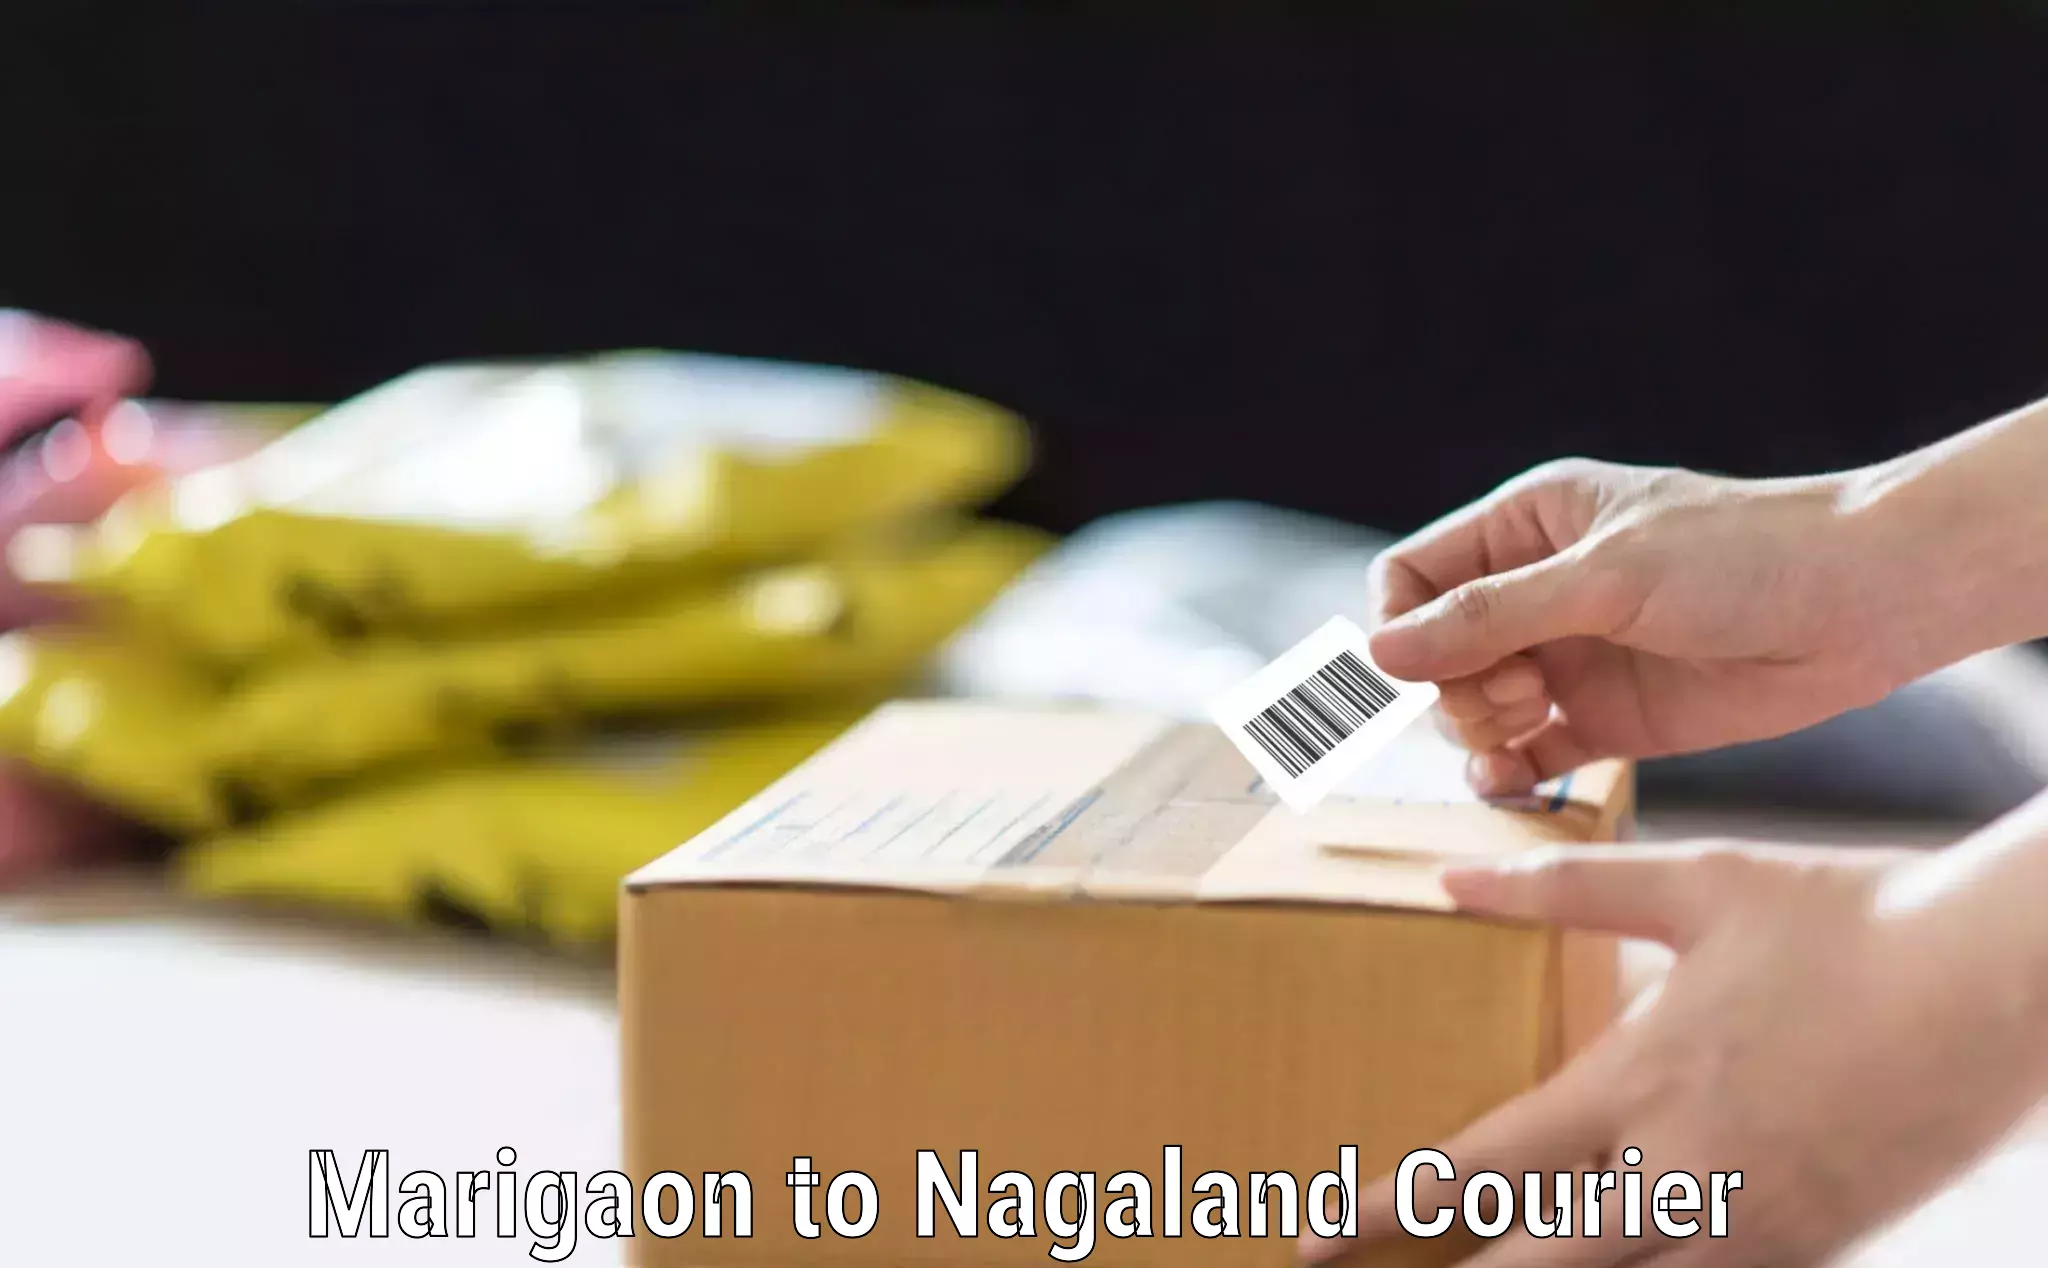 Luggage transport company Marigaon to NIT Nagaland